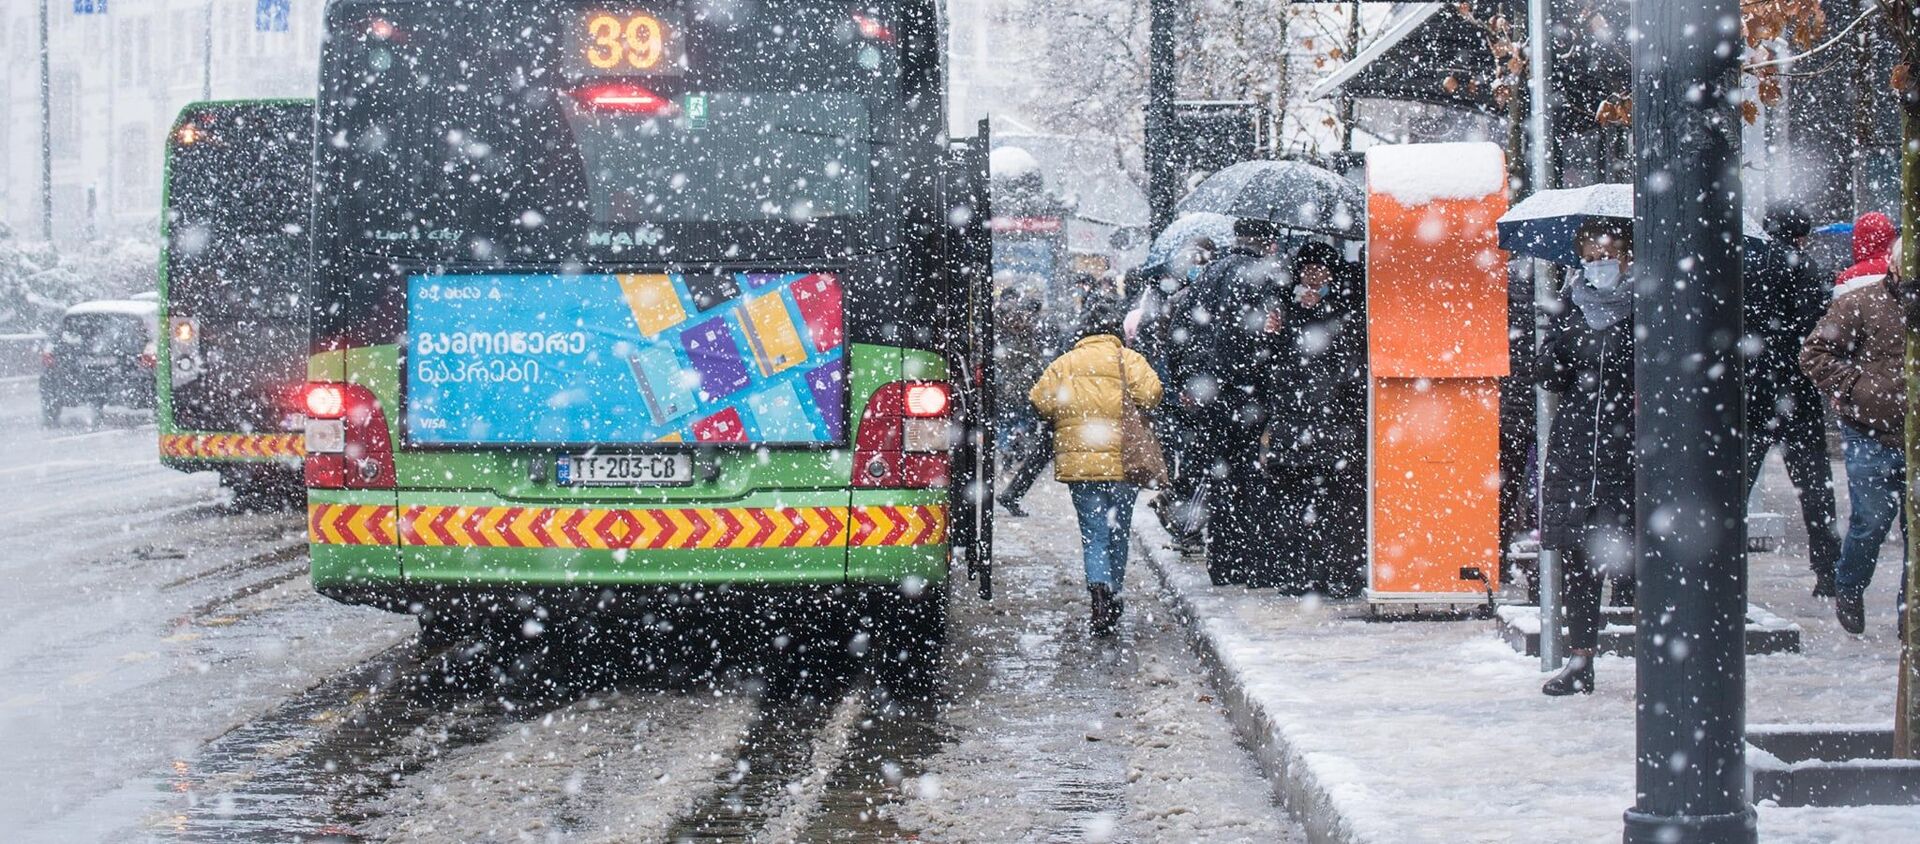 Снегопад в Тбилиси - автобусы на автобусной остановке в снегу - Sputnik Грузия, 1920, 08.03.2021